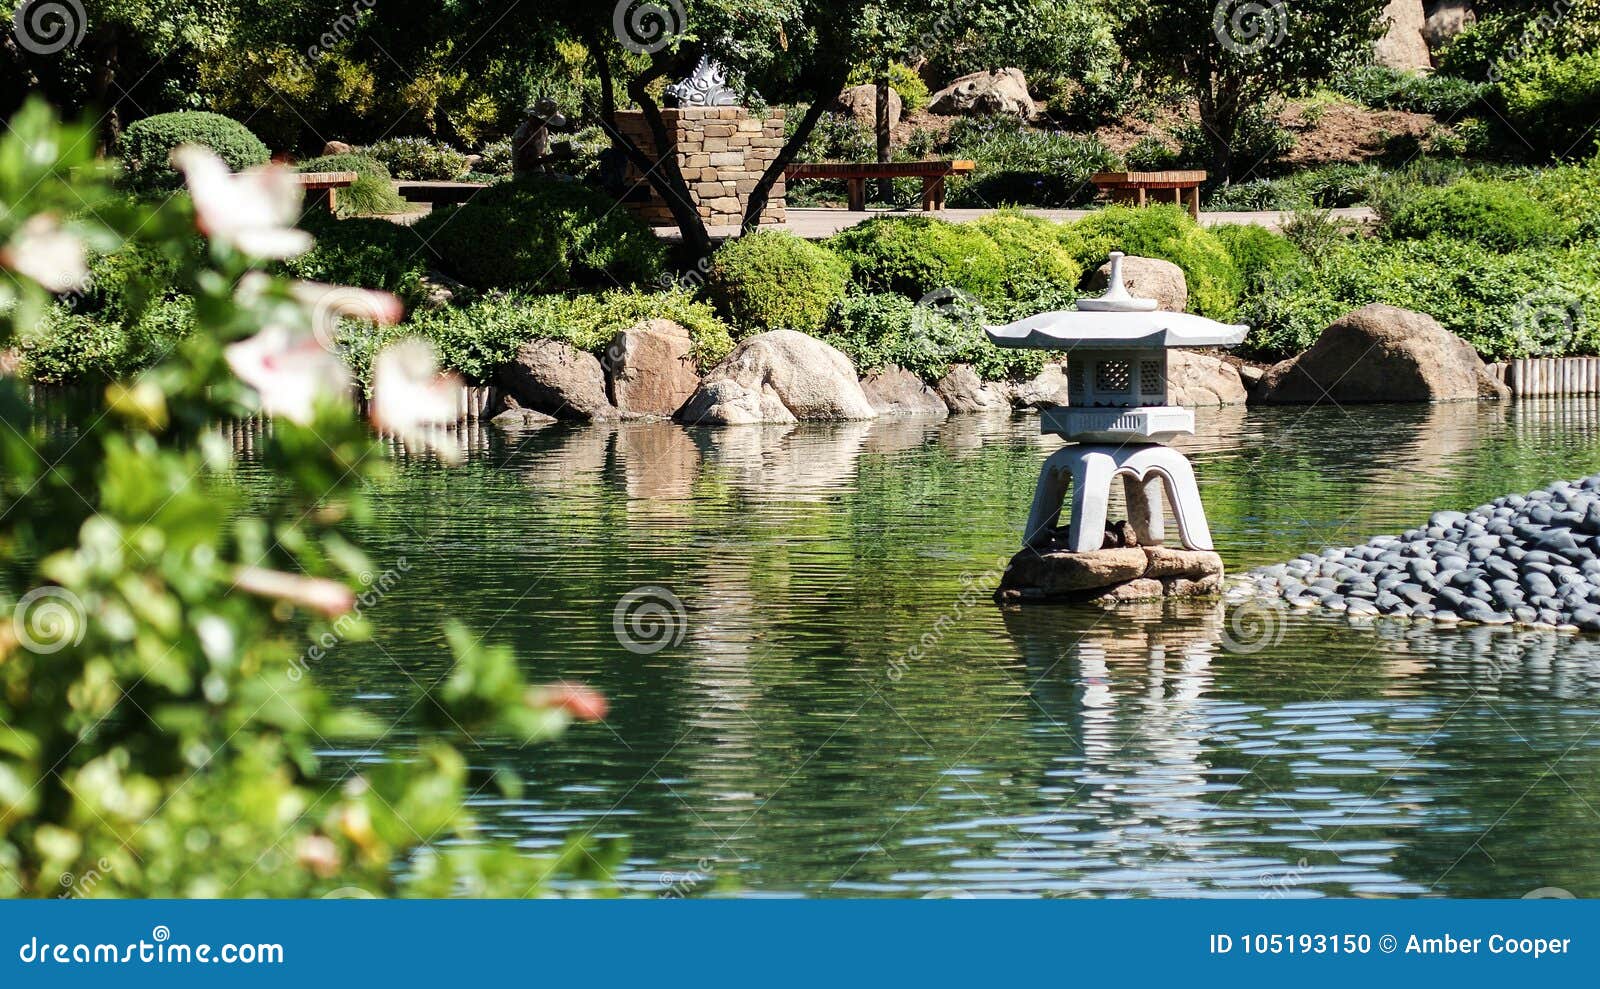 Japanese Friendship Garden Stock Photo Image Of Full 105193150